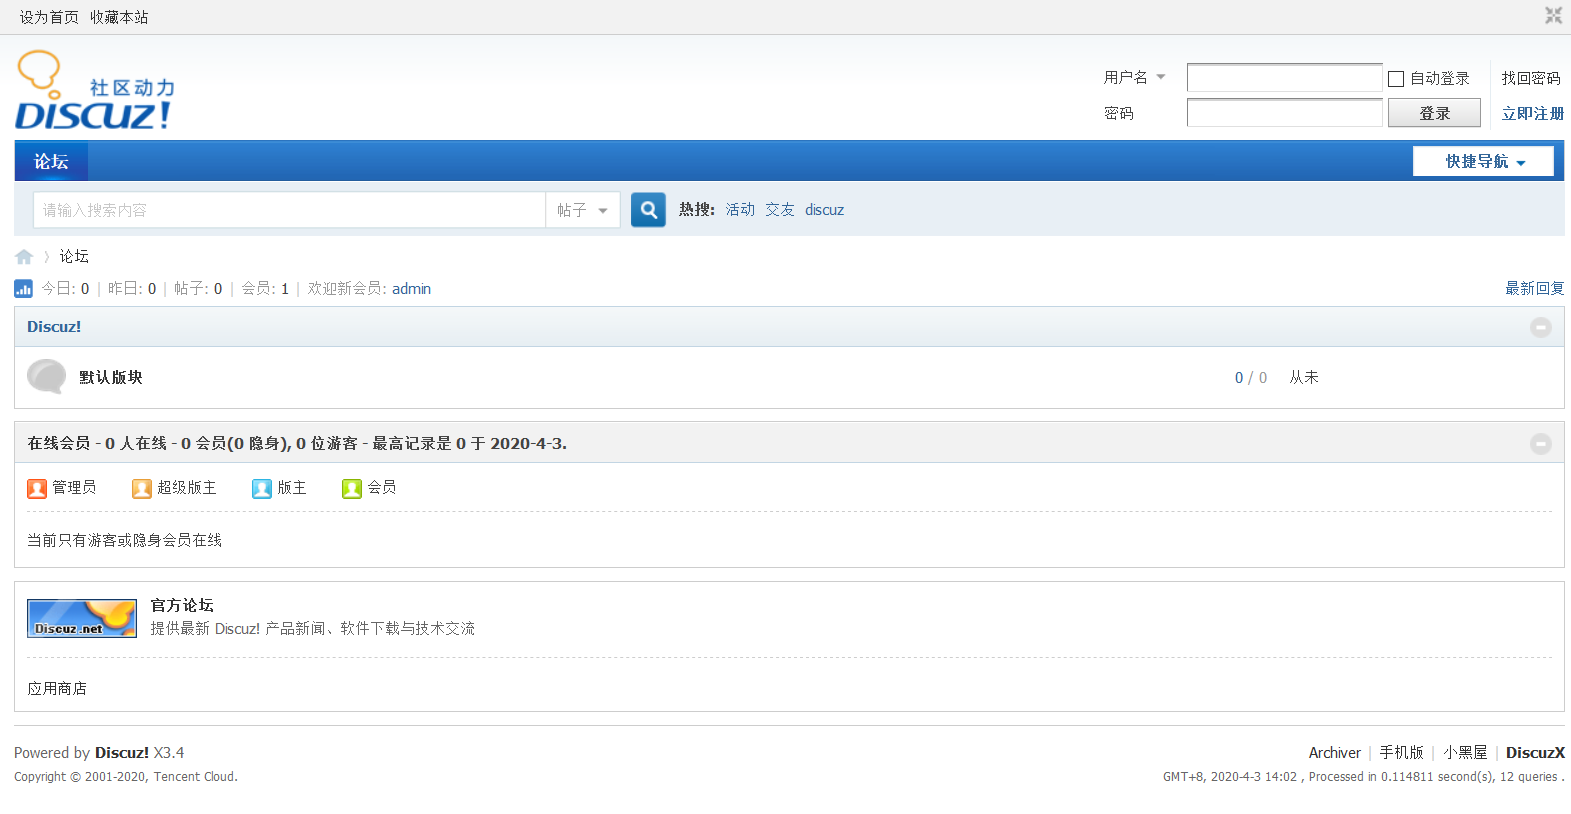 Forum php зеркало. Boyxzeed2 similar. Boyxzeed Discuz. Форум php. Boyxzeed Chinese.